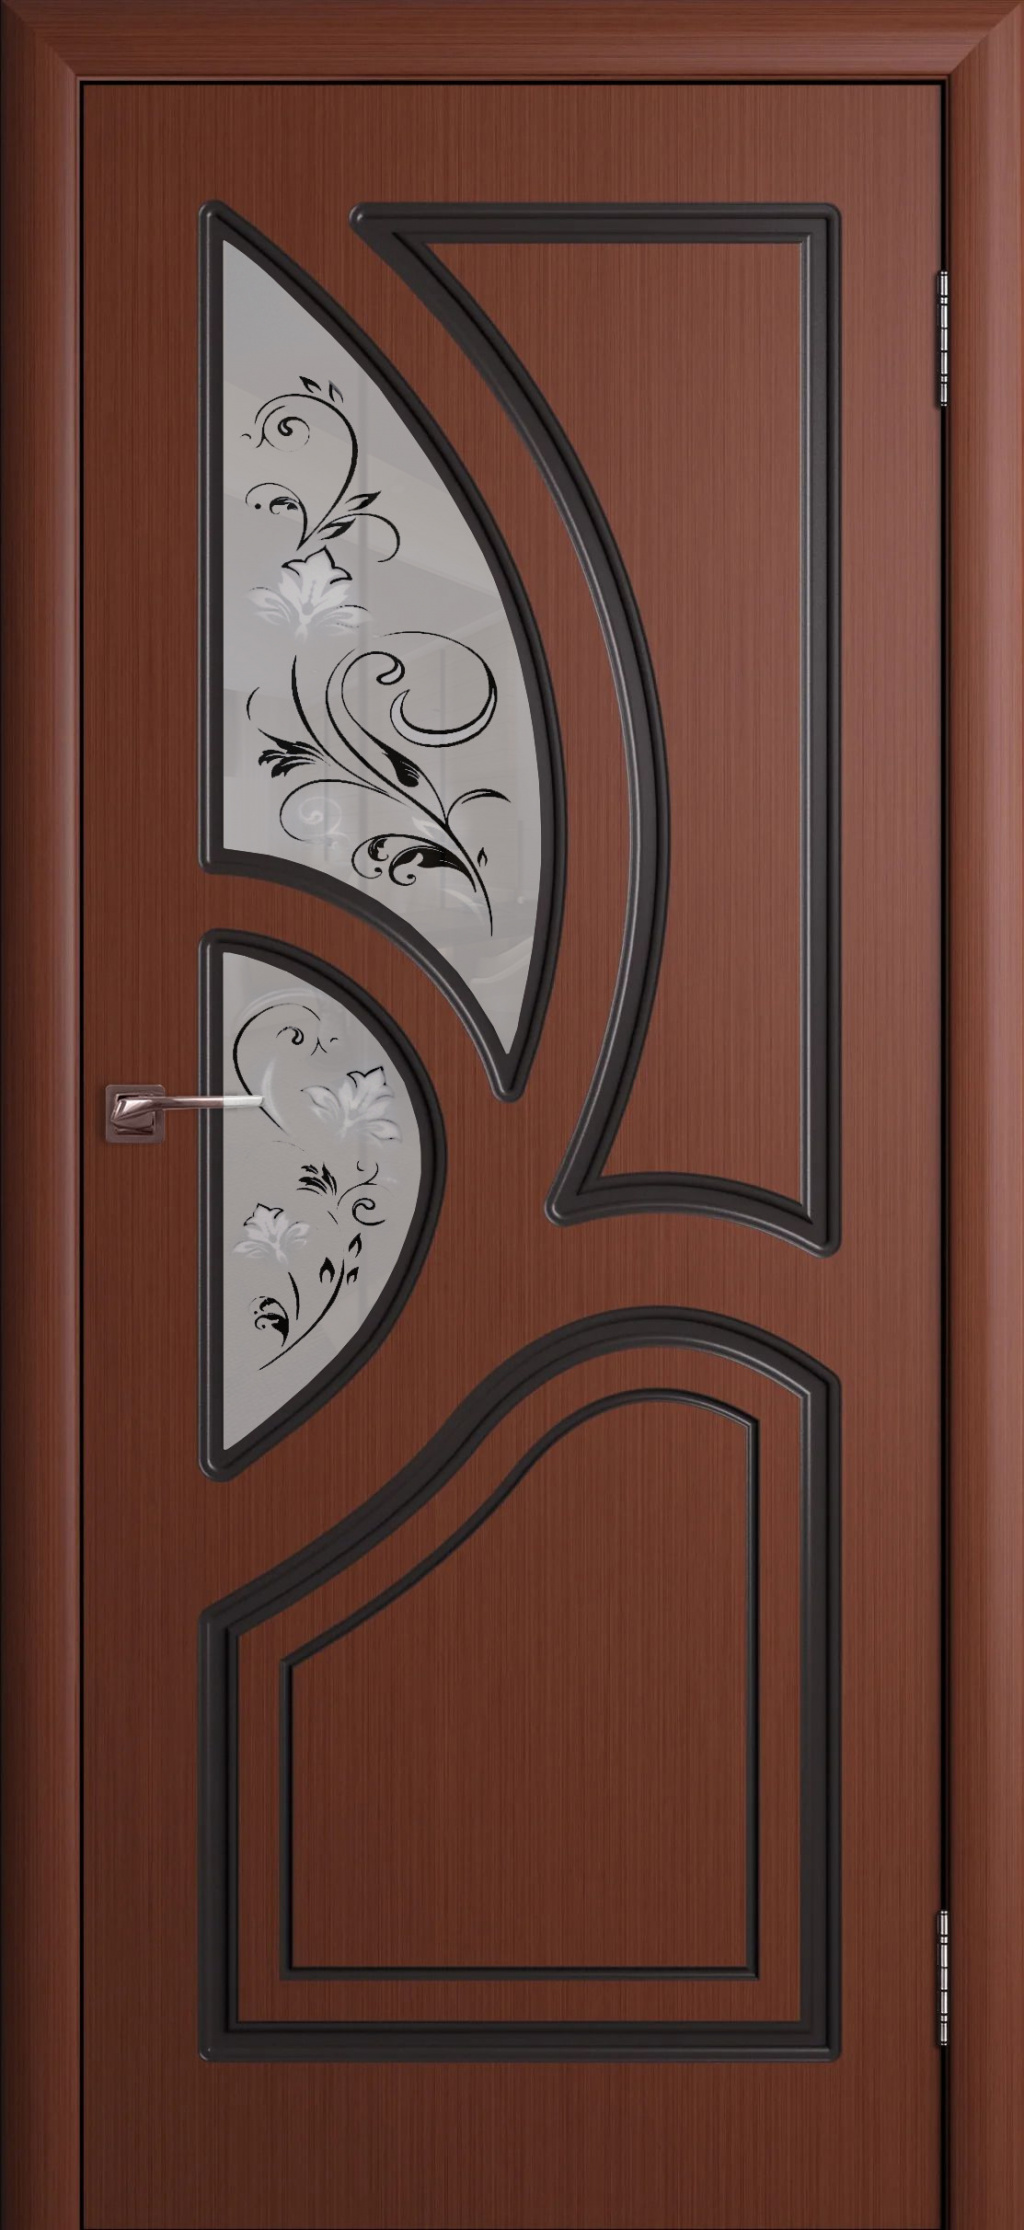 Cordondoor Межкомнатная дверь Велес ПО, арт. 10615 - фото №1